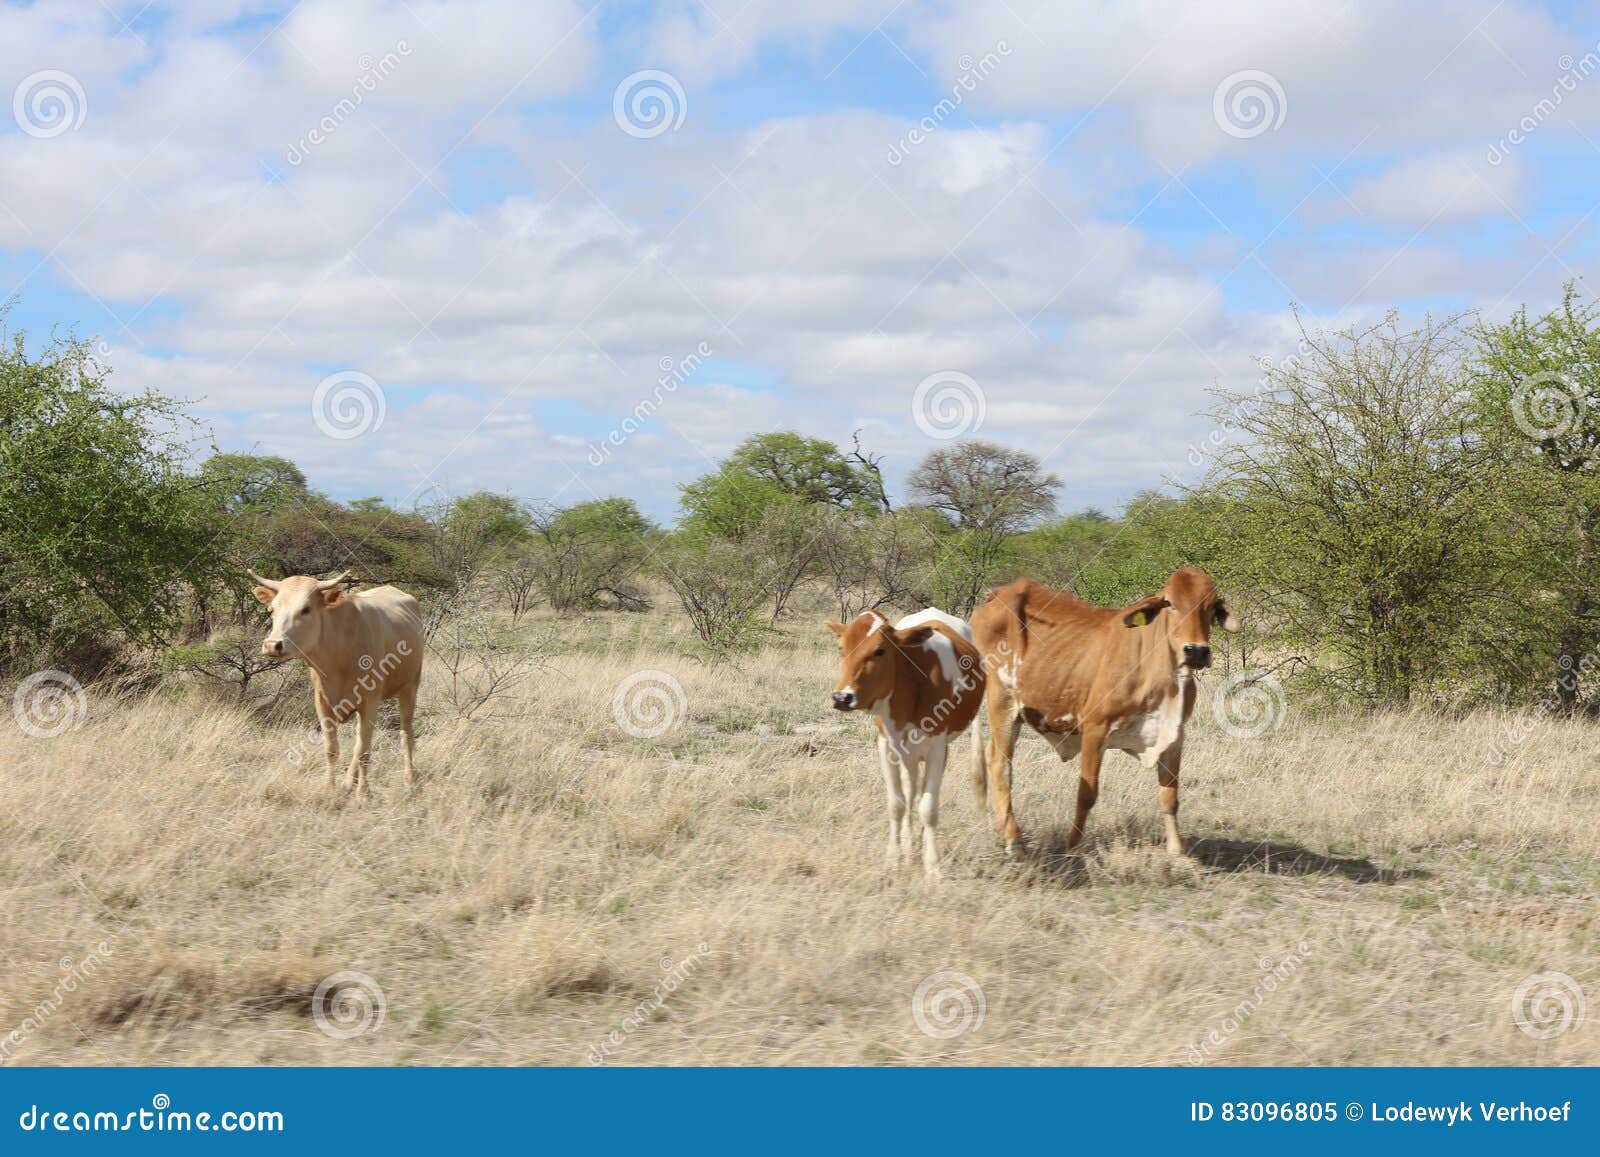 cattle grazing in the veldt